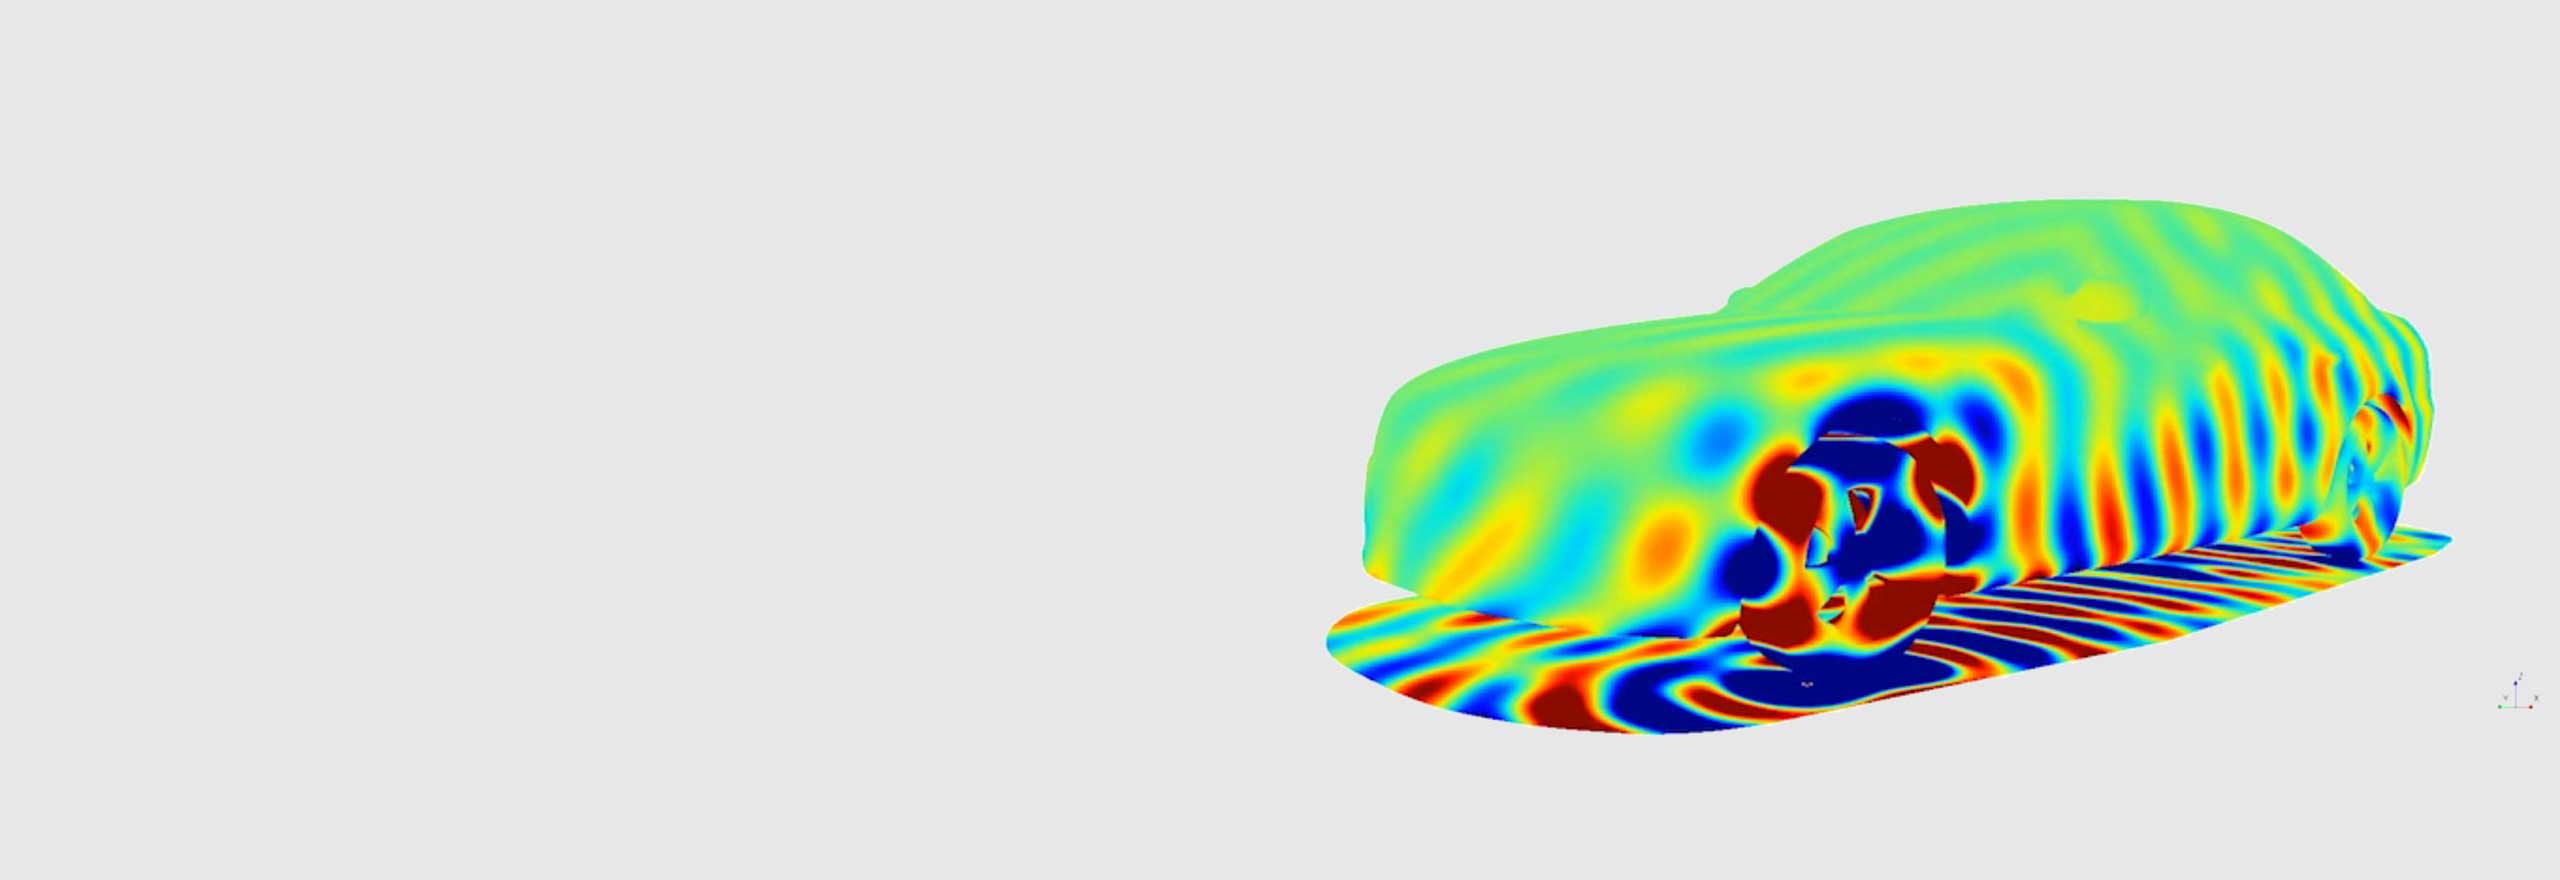 Simulation des Vorbeifahrgeräuschs eines Fahrzeugs mit akustischer Simulationssoftware 